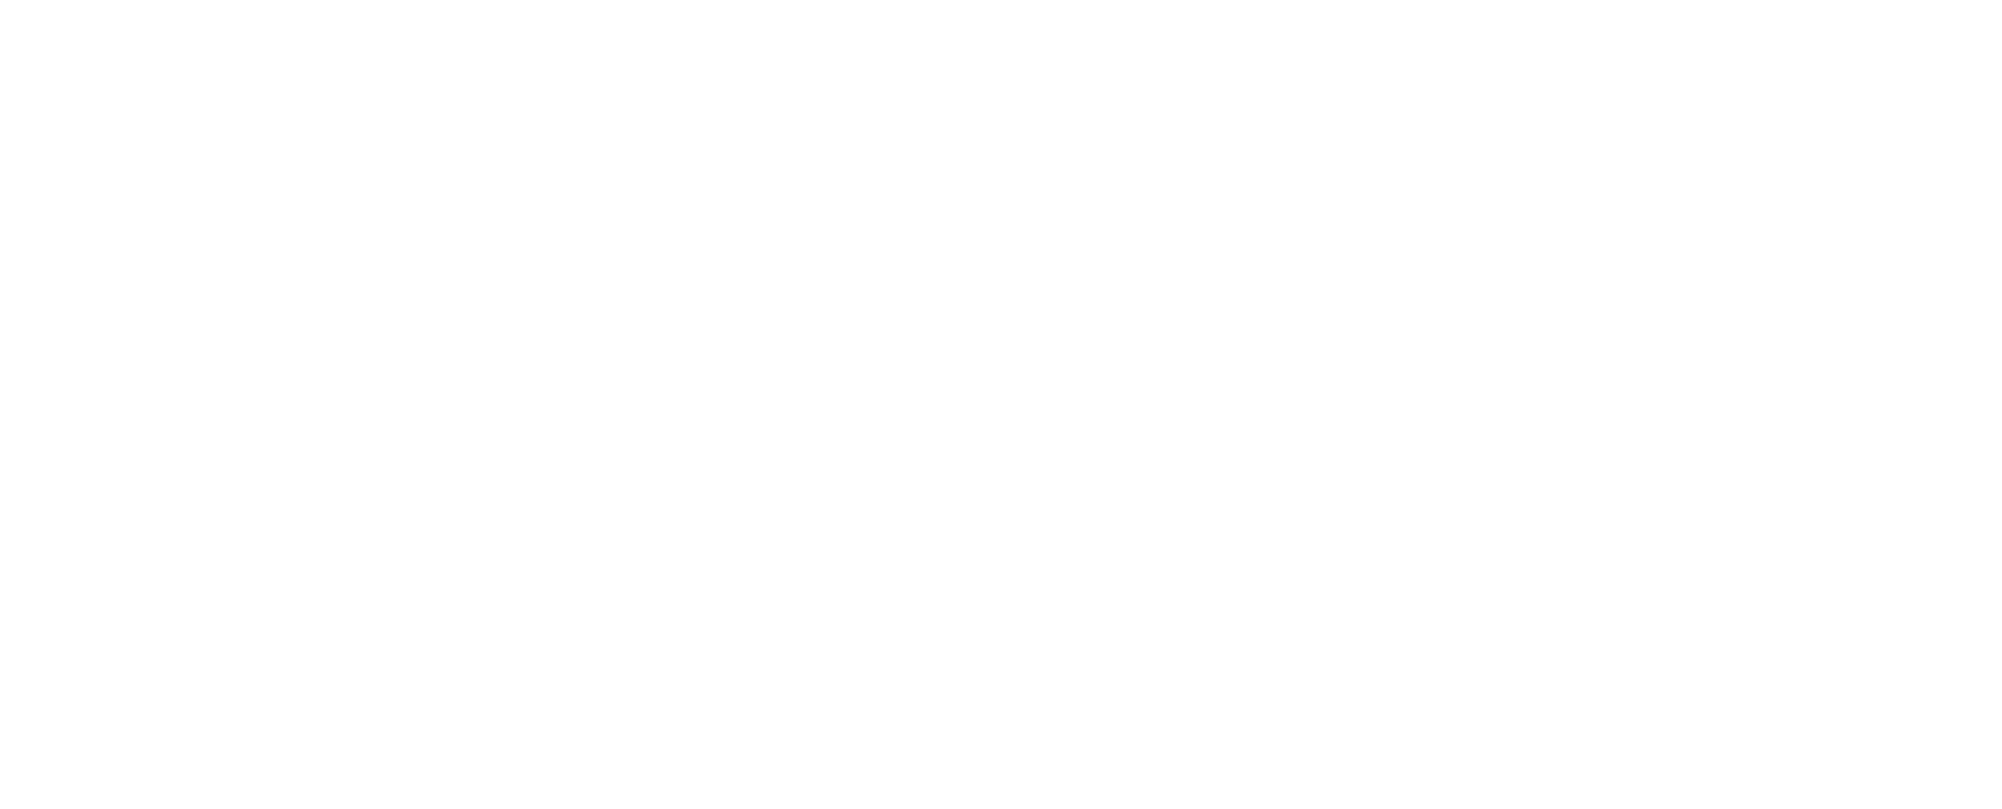 Top Dog Information